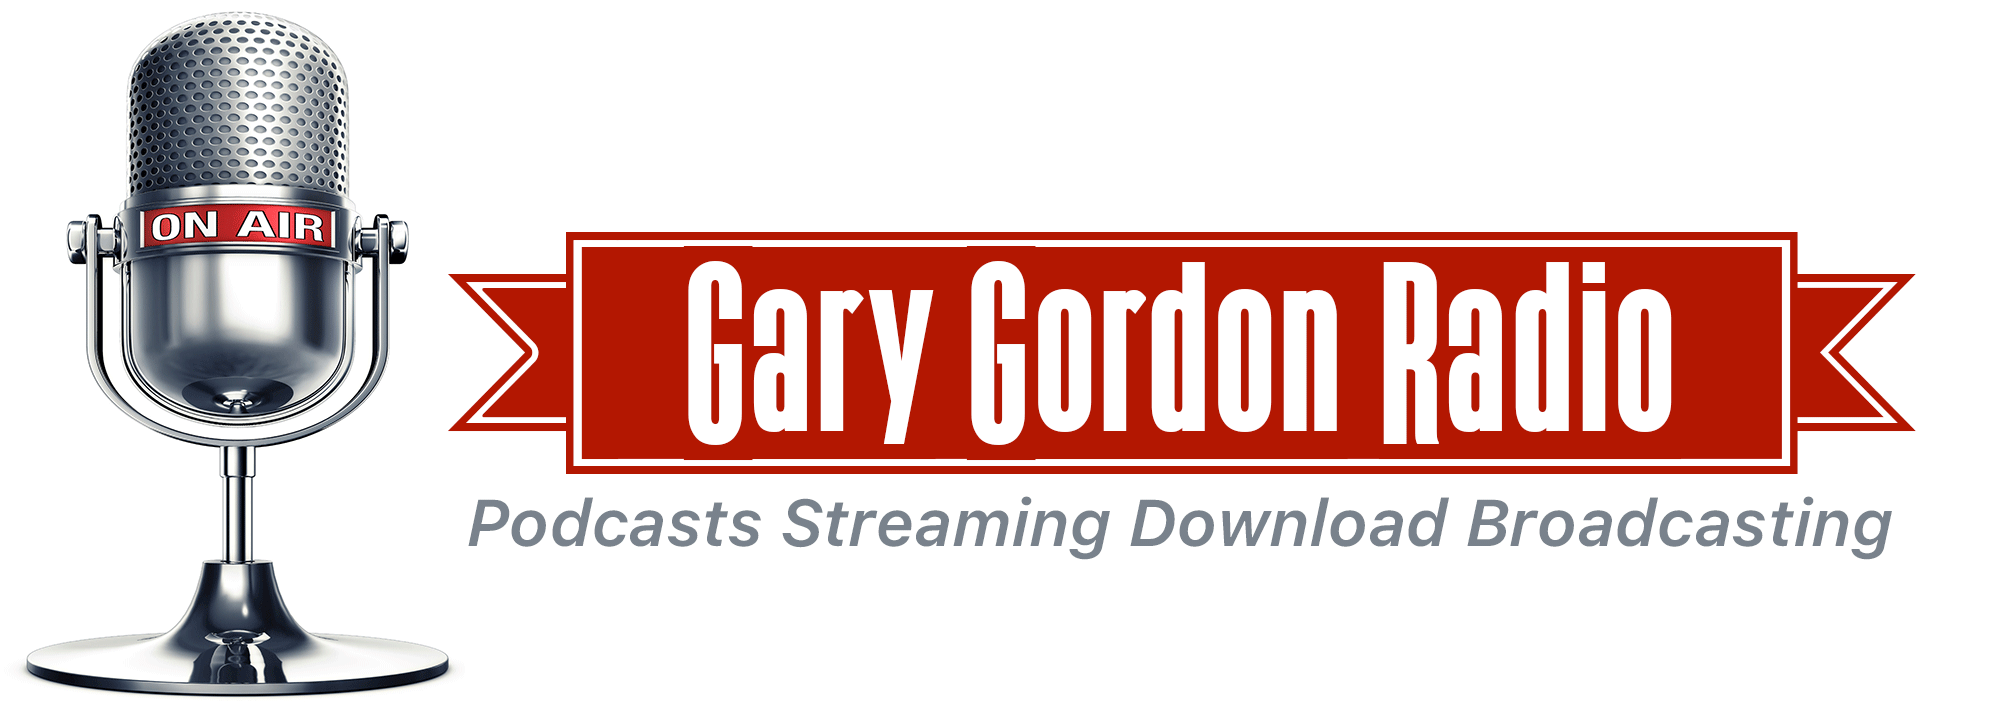 GARY GORDON RADIO